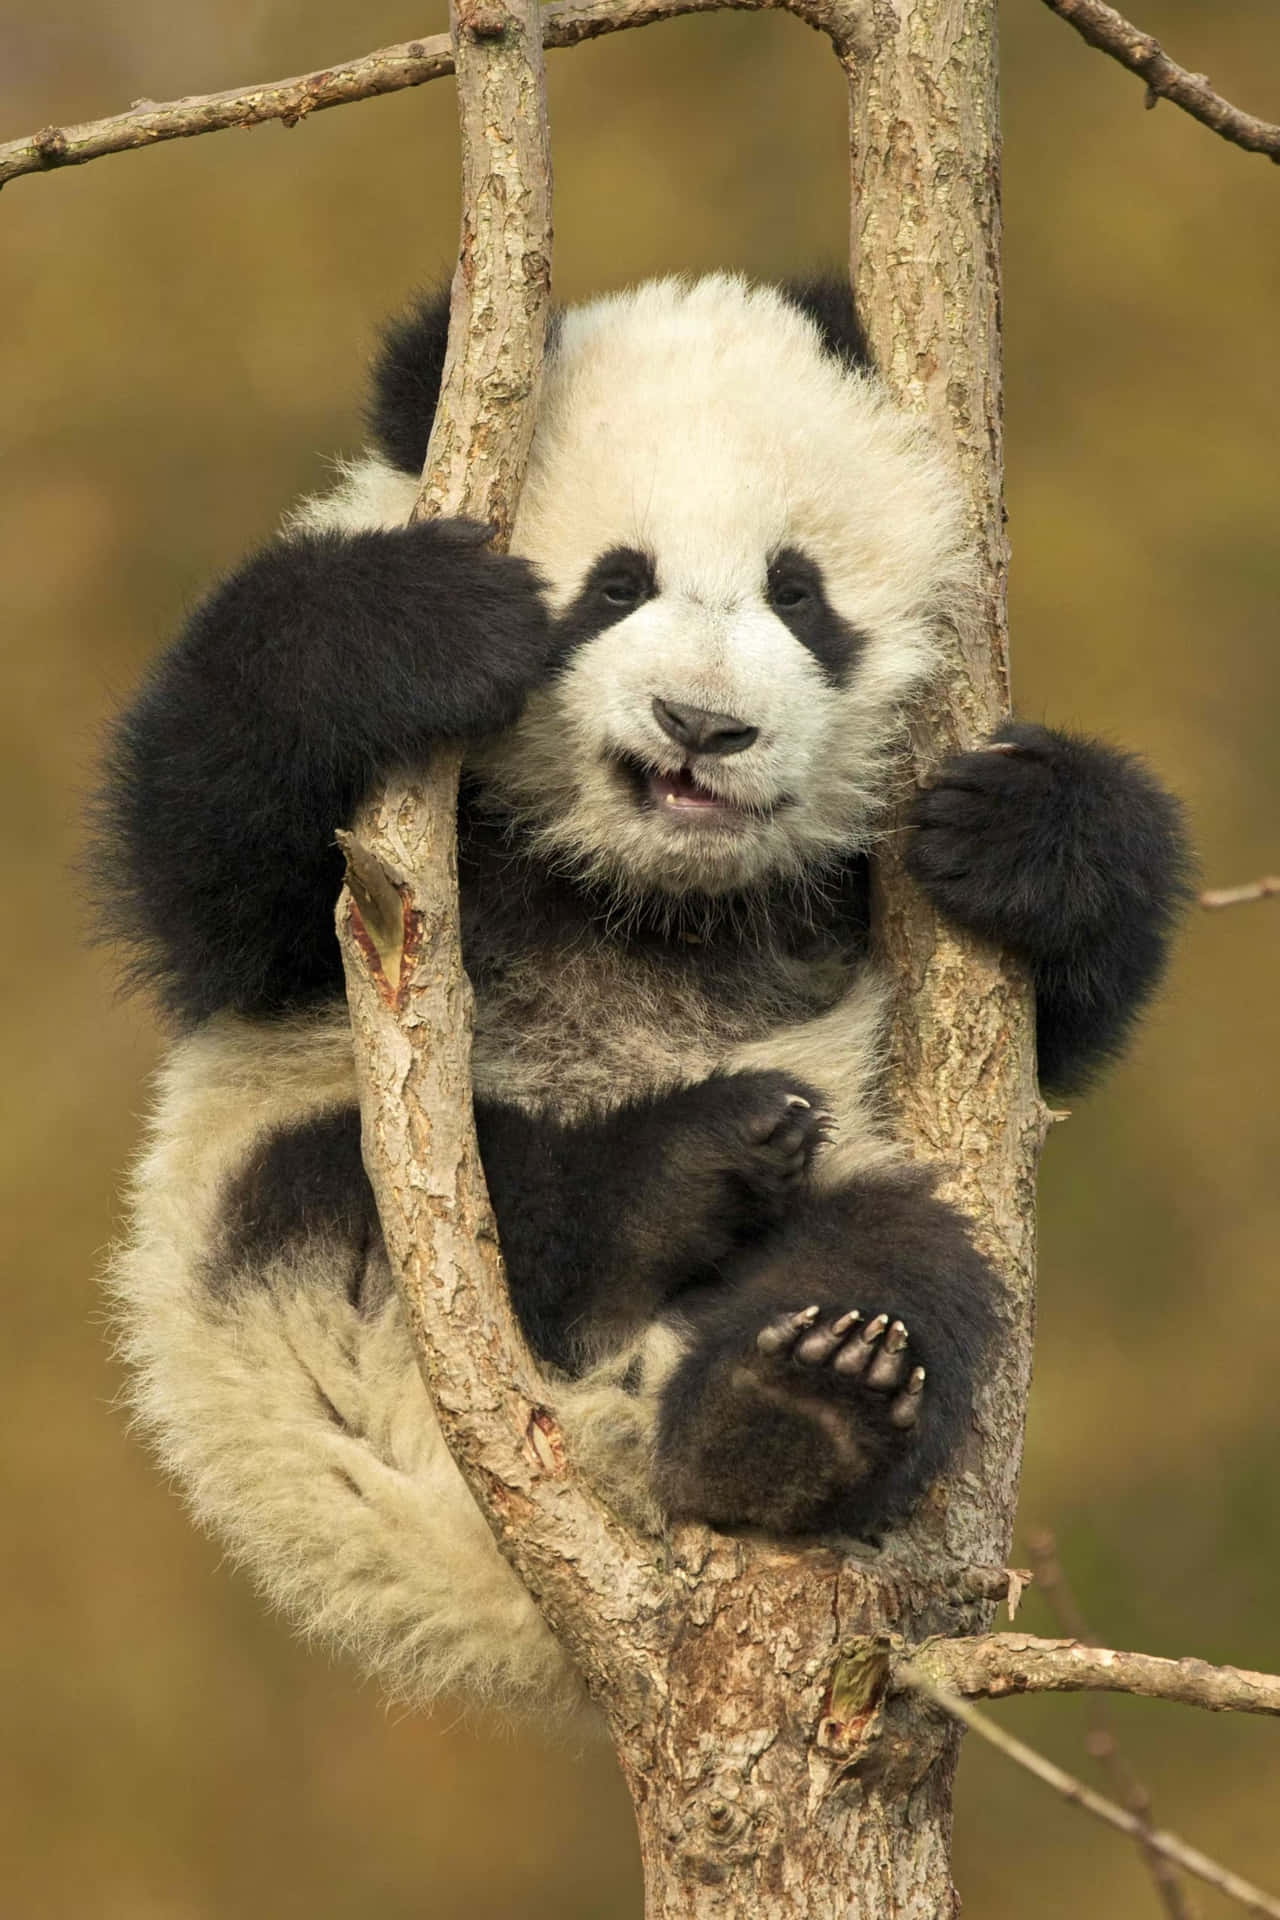 Betrachtedie Welt Aus Den Augen Eines Niedlichen Pandas!